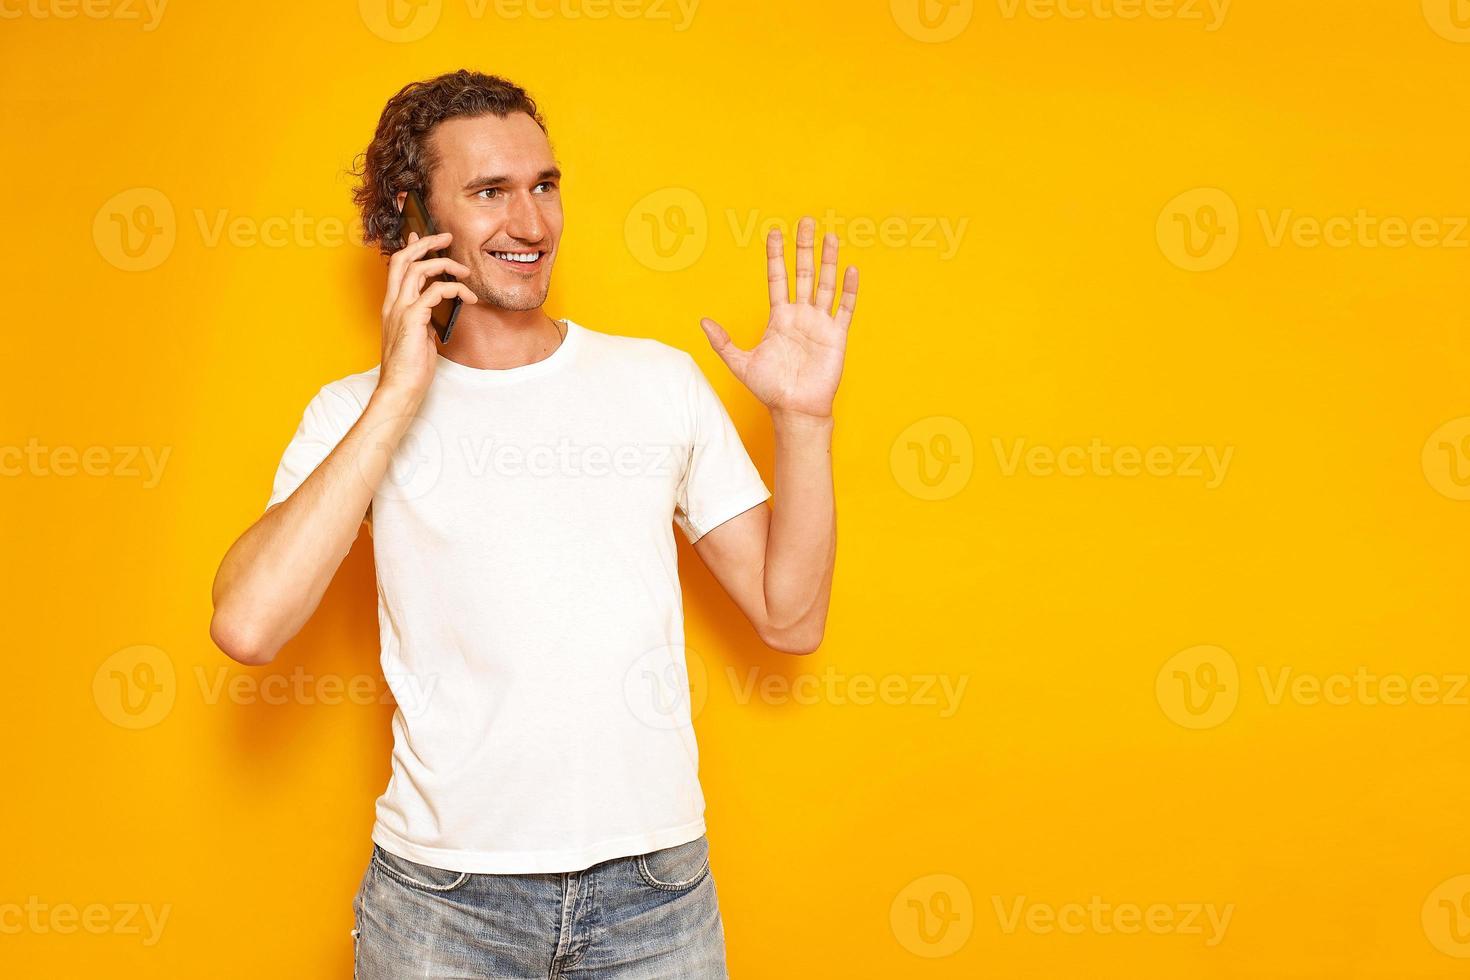 l'uomo sorridente sta parlando al telefono gesticolando con la mano alzata, godendosi la comunicazione, vestito con abiti casual. isolato su sfondo giallo studio. concetto - persone, tecnologia, comunicazione foto